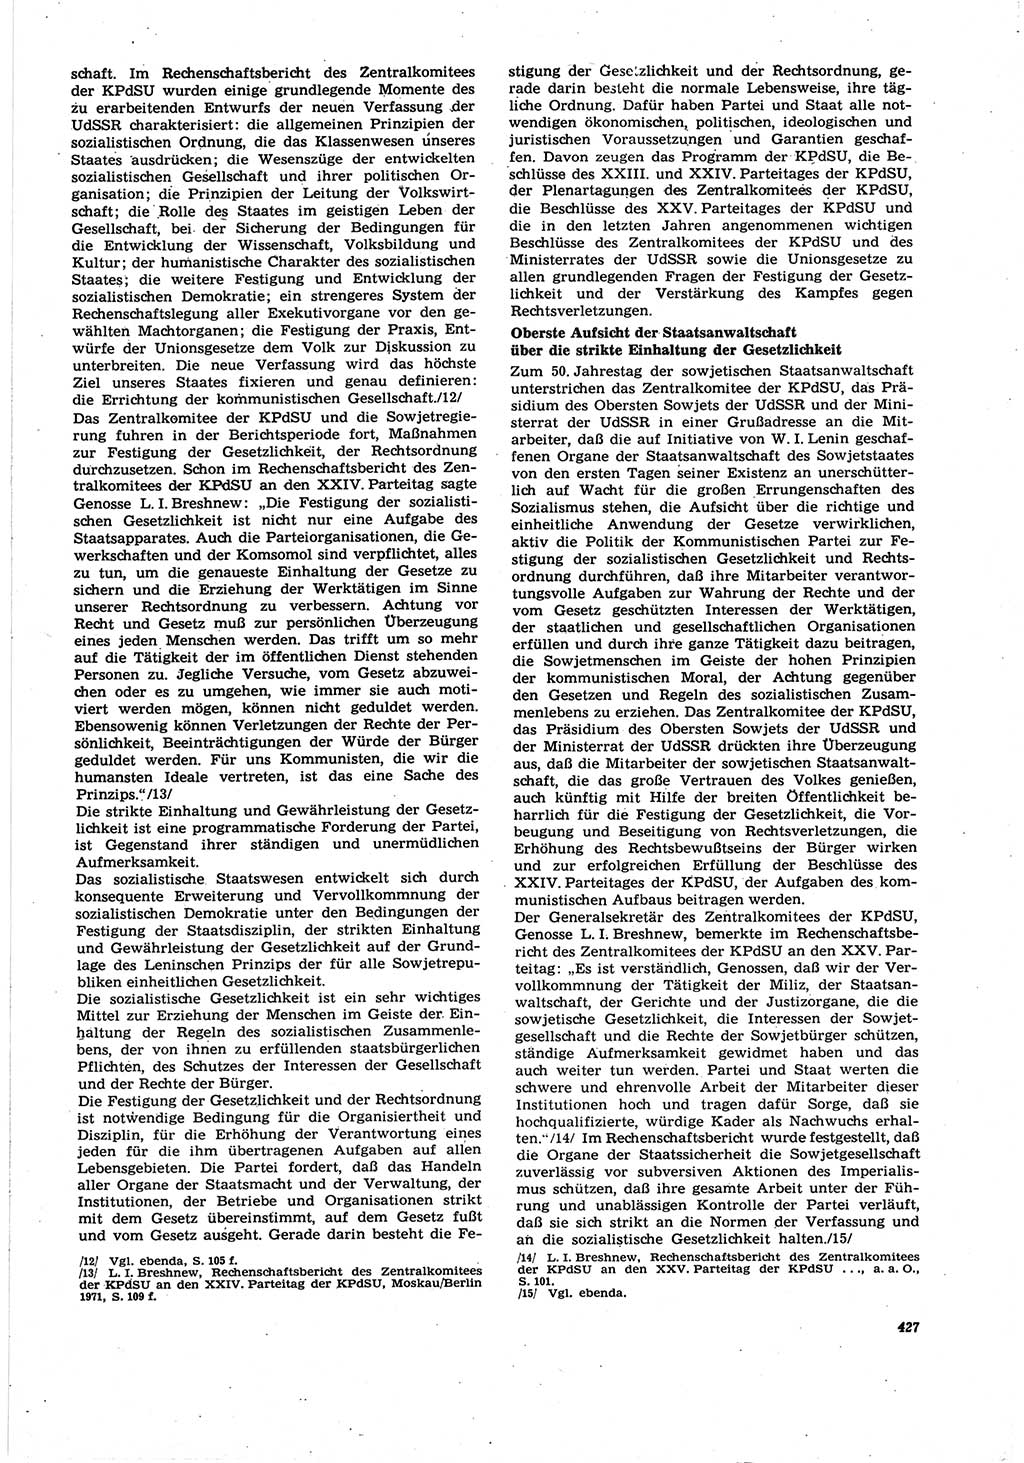 Neue Justiz (NJ), Zeitschrift für Recht und Rechtswissenschaft [Deutsche Demokratische Republik (DDR)], 30. Jahrgang 1976, Seite 427 (NJ DDR 1976, S. 427)